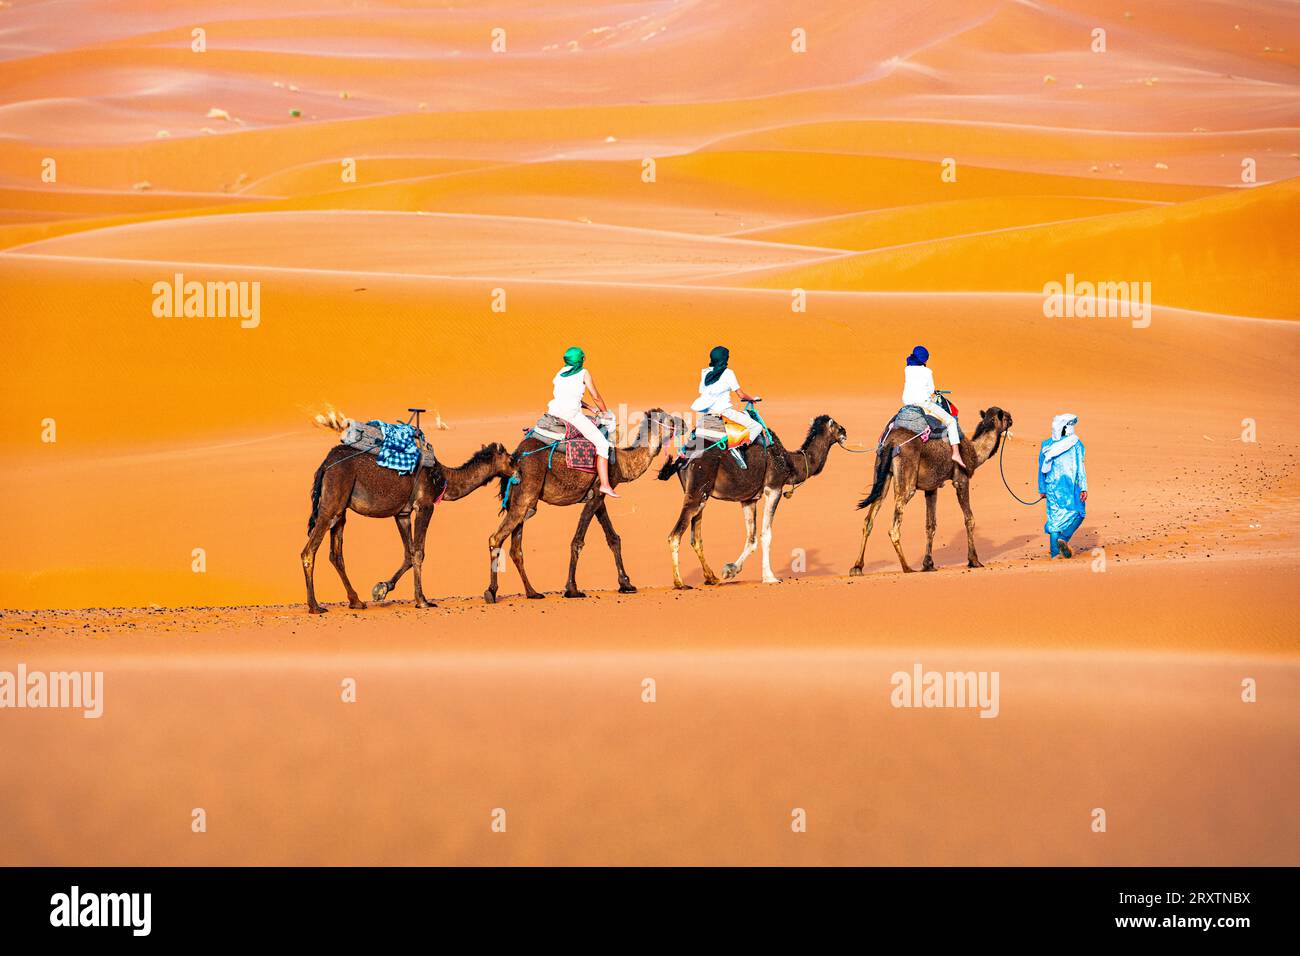 Homme touareg dirigeant un train de dromadaires de touristes sur les dunes de sable de l'Erg Chebbi, Merzouga, désert du Sahara, Maroc, Afrique du Nord, Afrique Banque D'Images